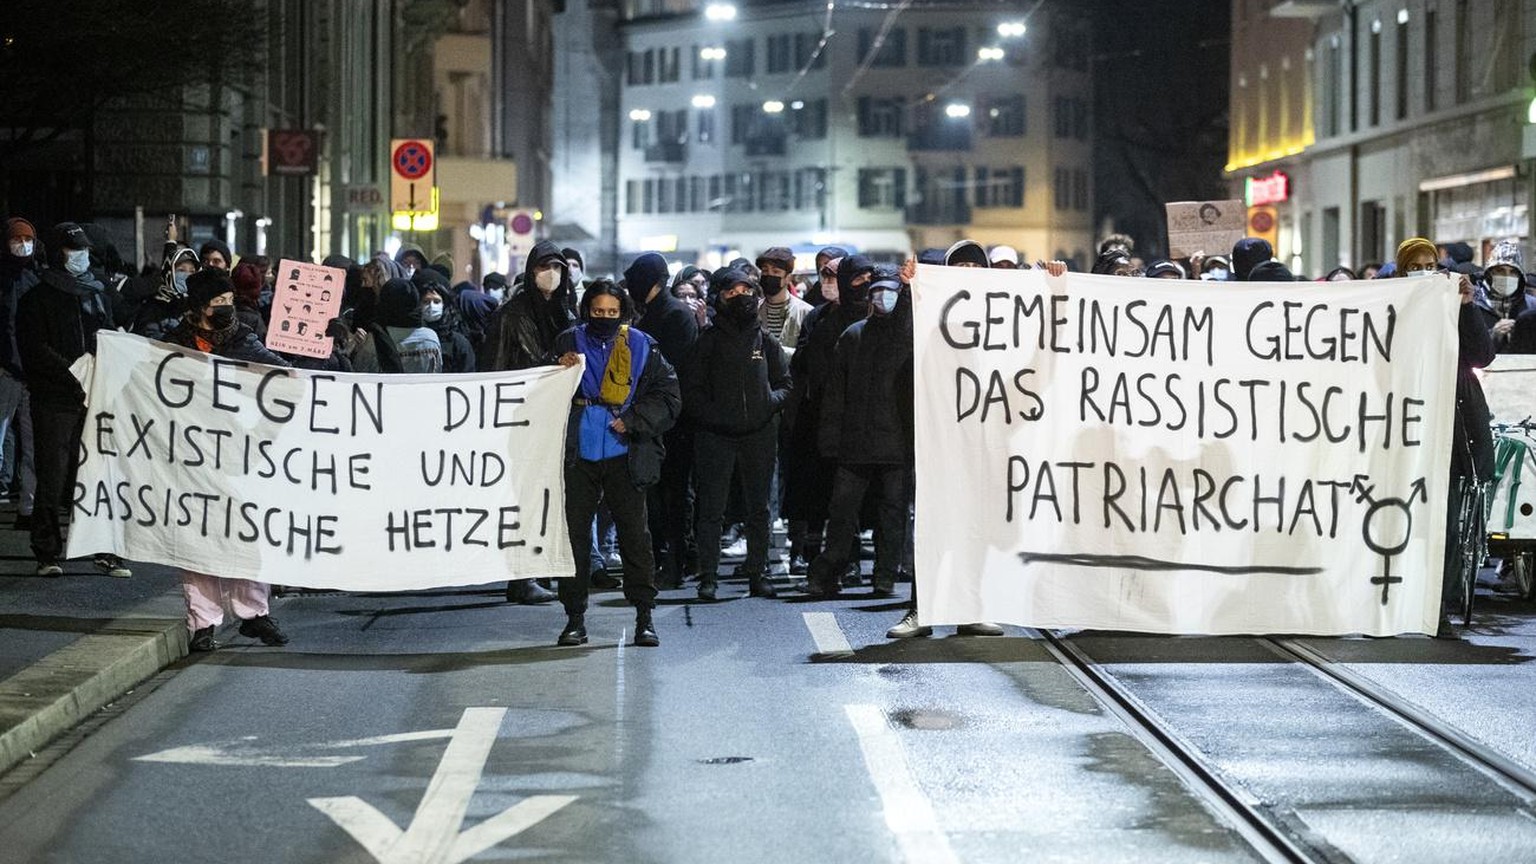 In der Stadt Zürich wurde in den vergangenen Tagen mehrfach demonstriert. Der Kanton wollte solche Grosskundgebungen mit Verboten verhindern.